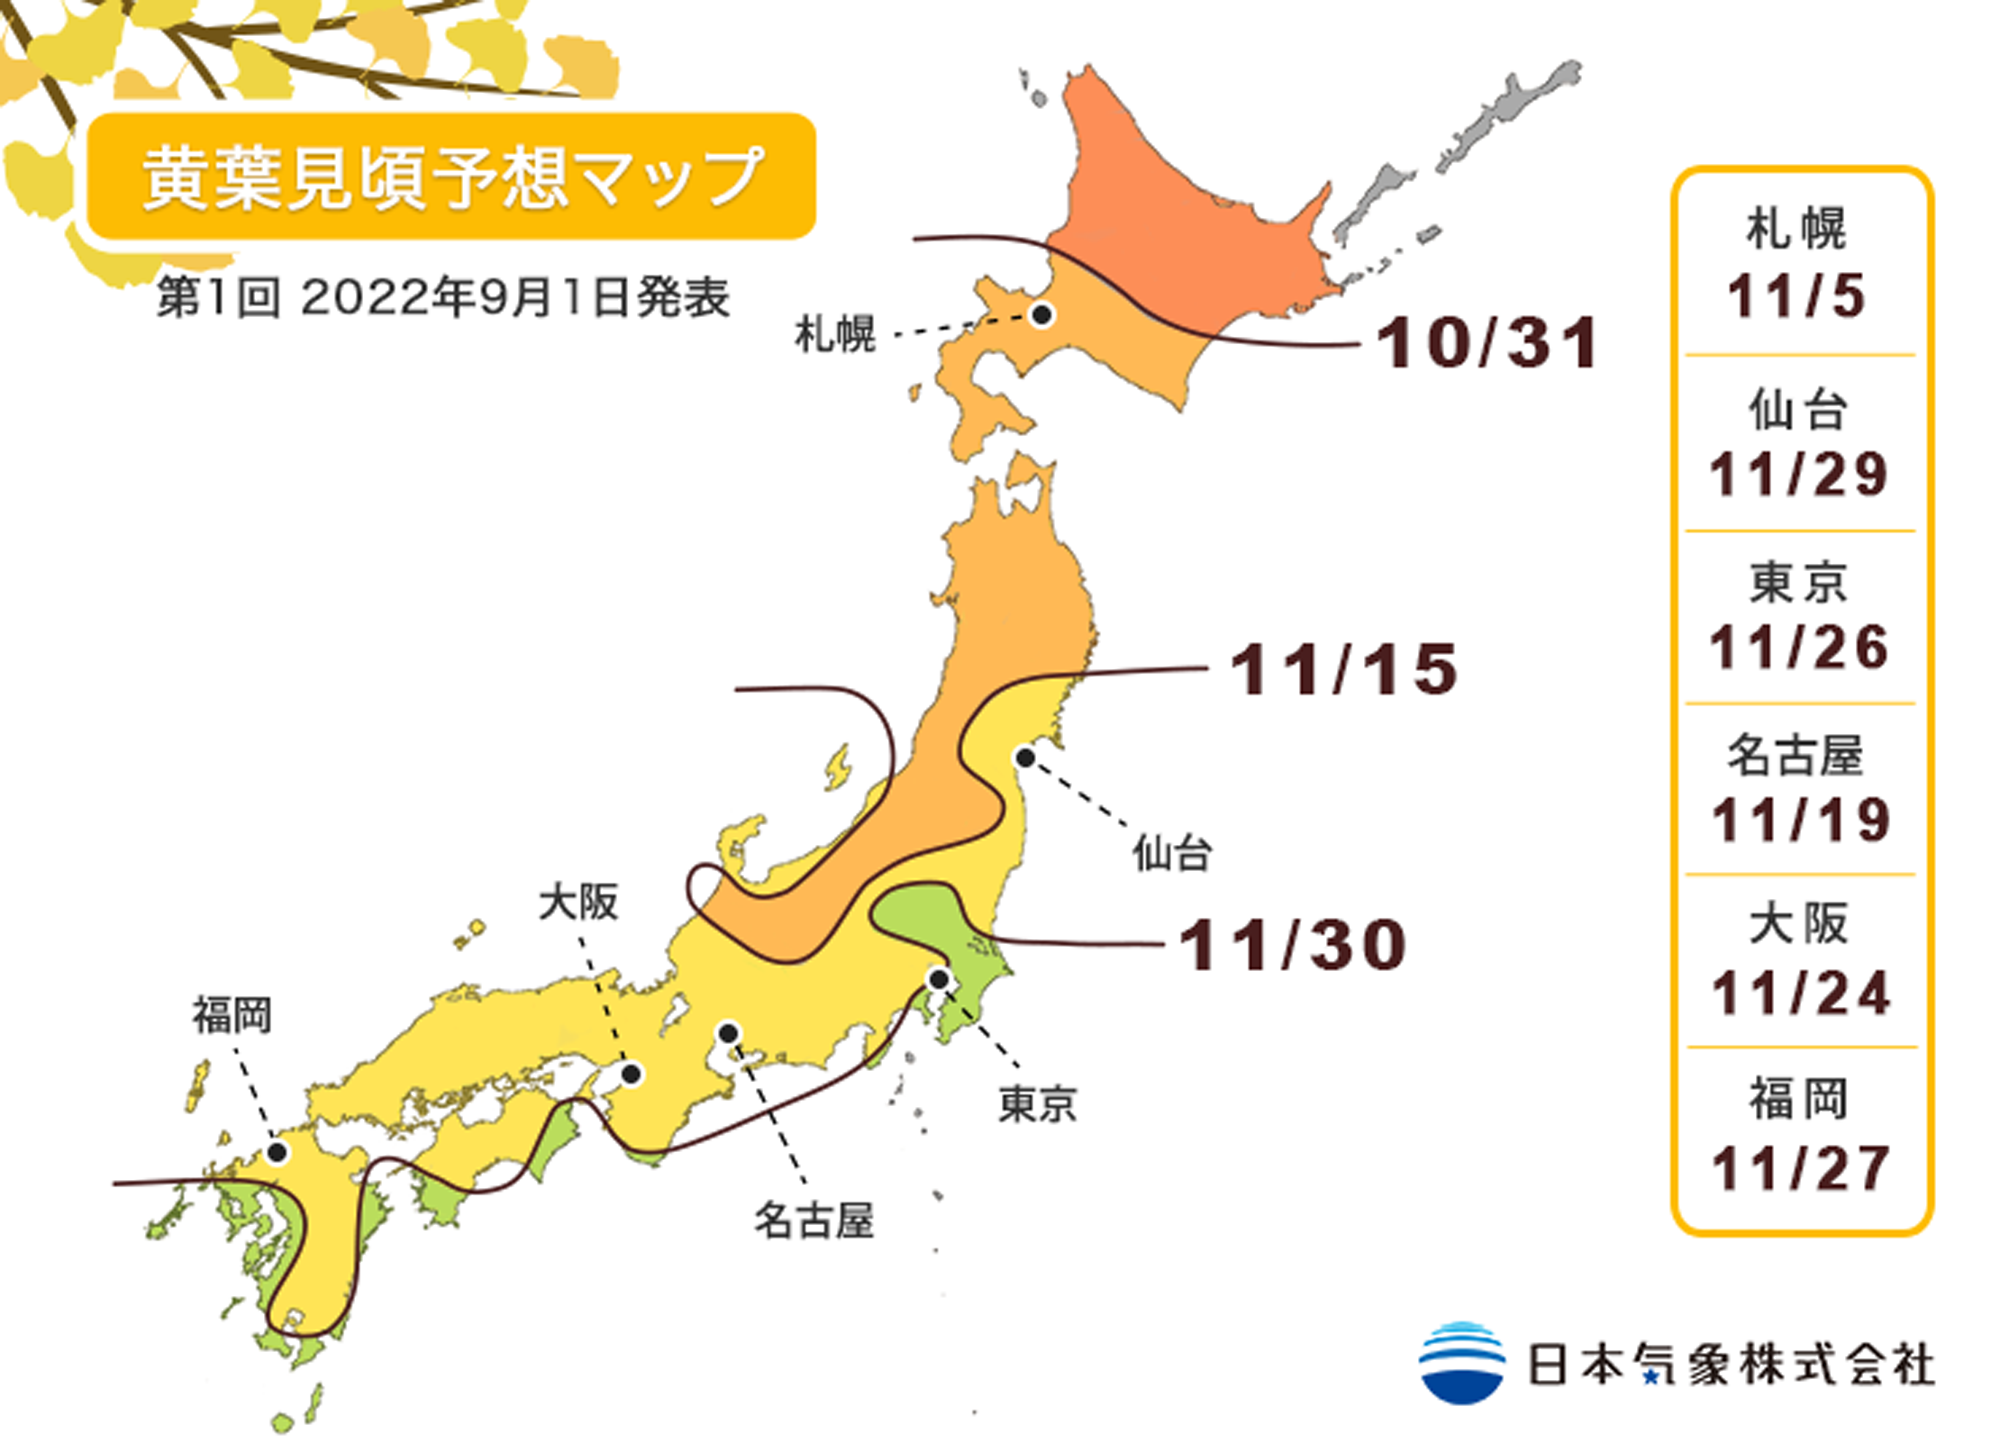 Japan Autumn Leaves Forecast 22 When To Expect Peak Koyo Season